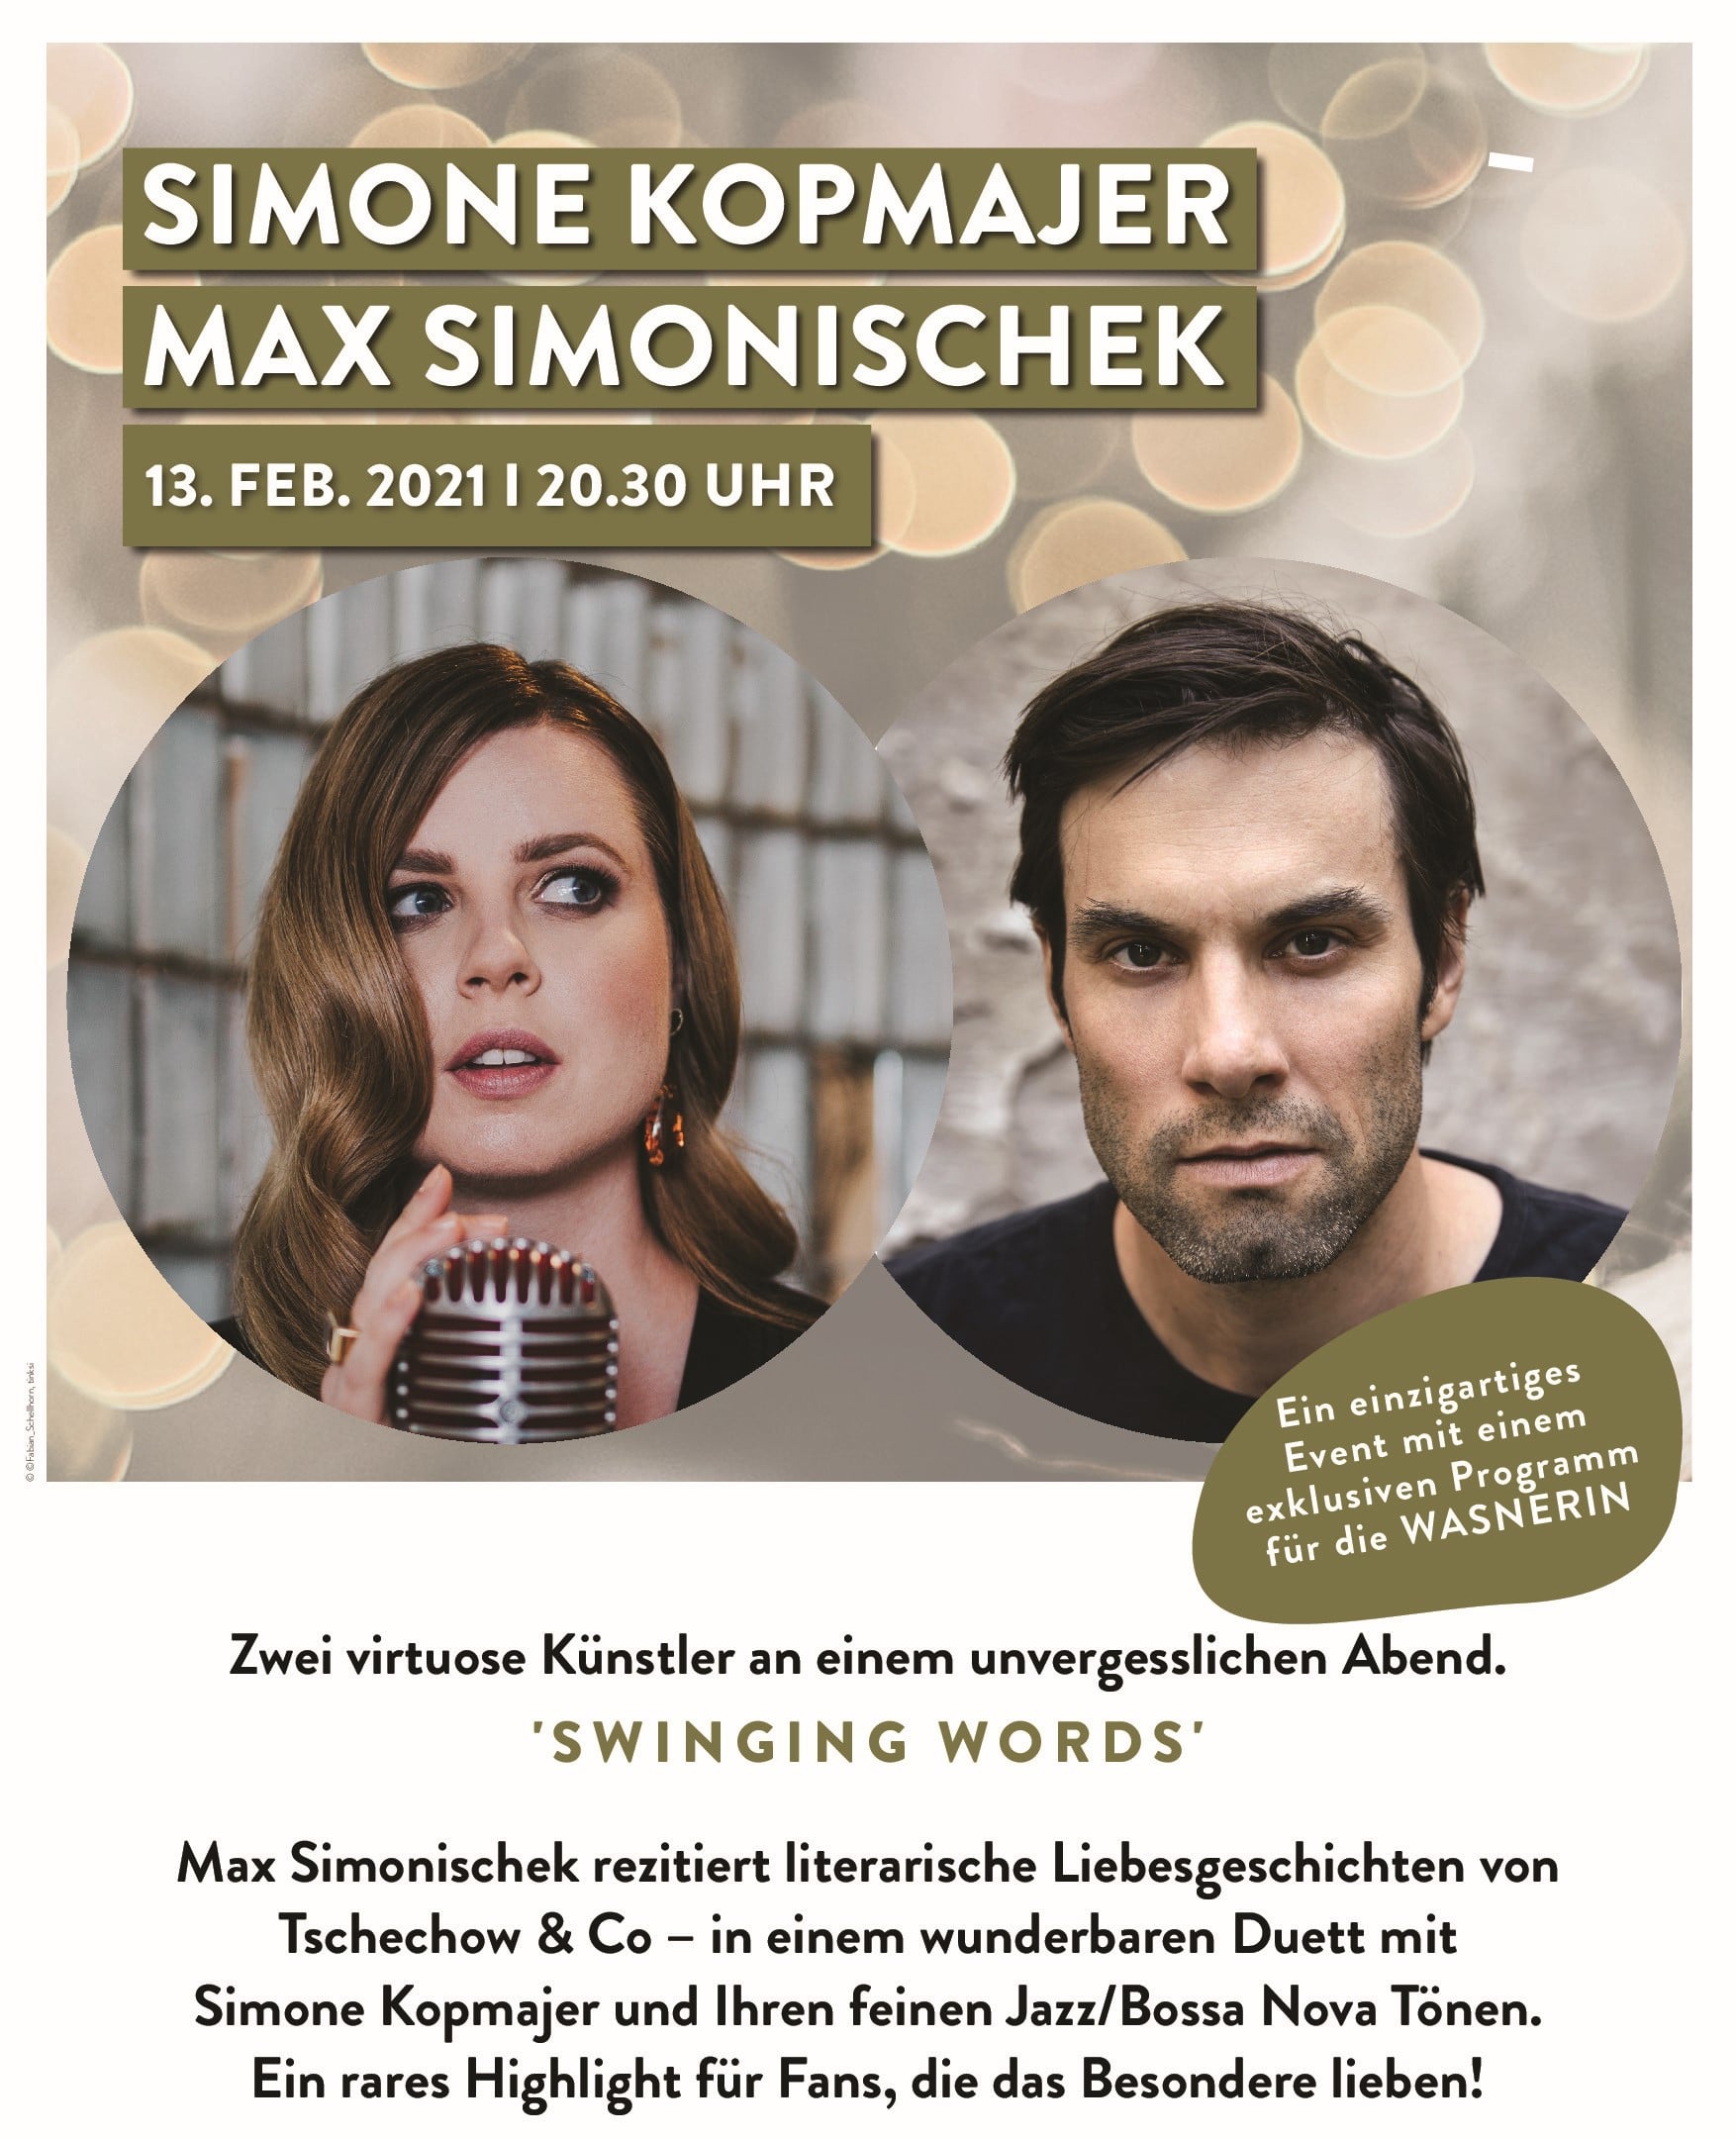 Swinging Words mit Simone Kopmajer und Max Simonischek